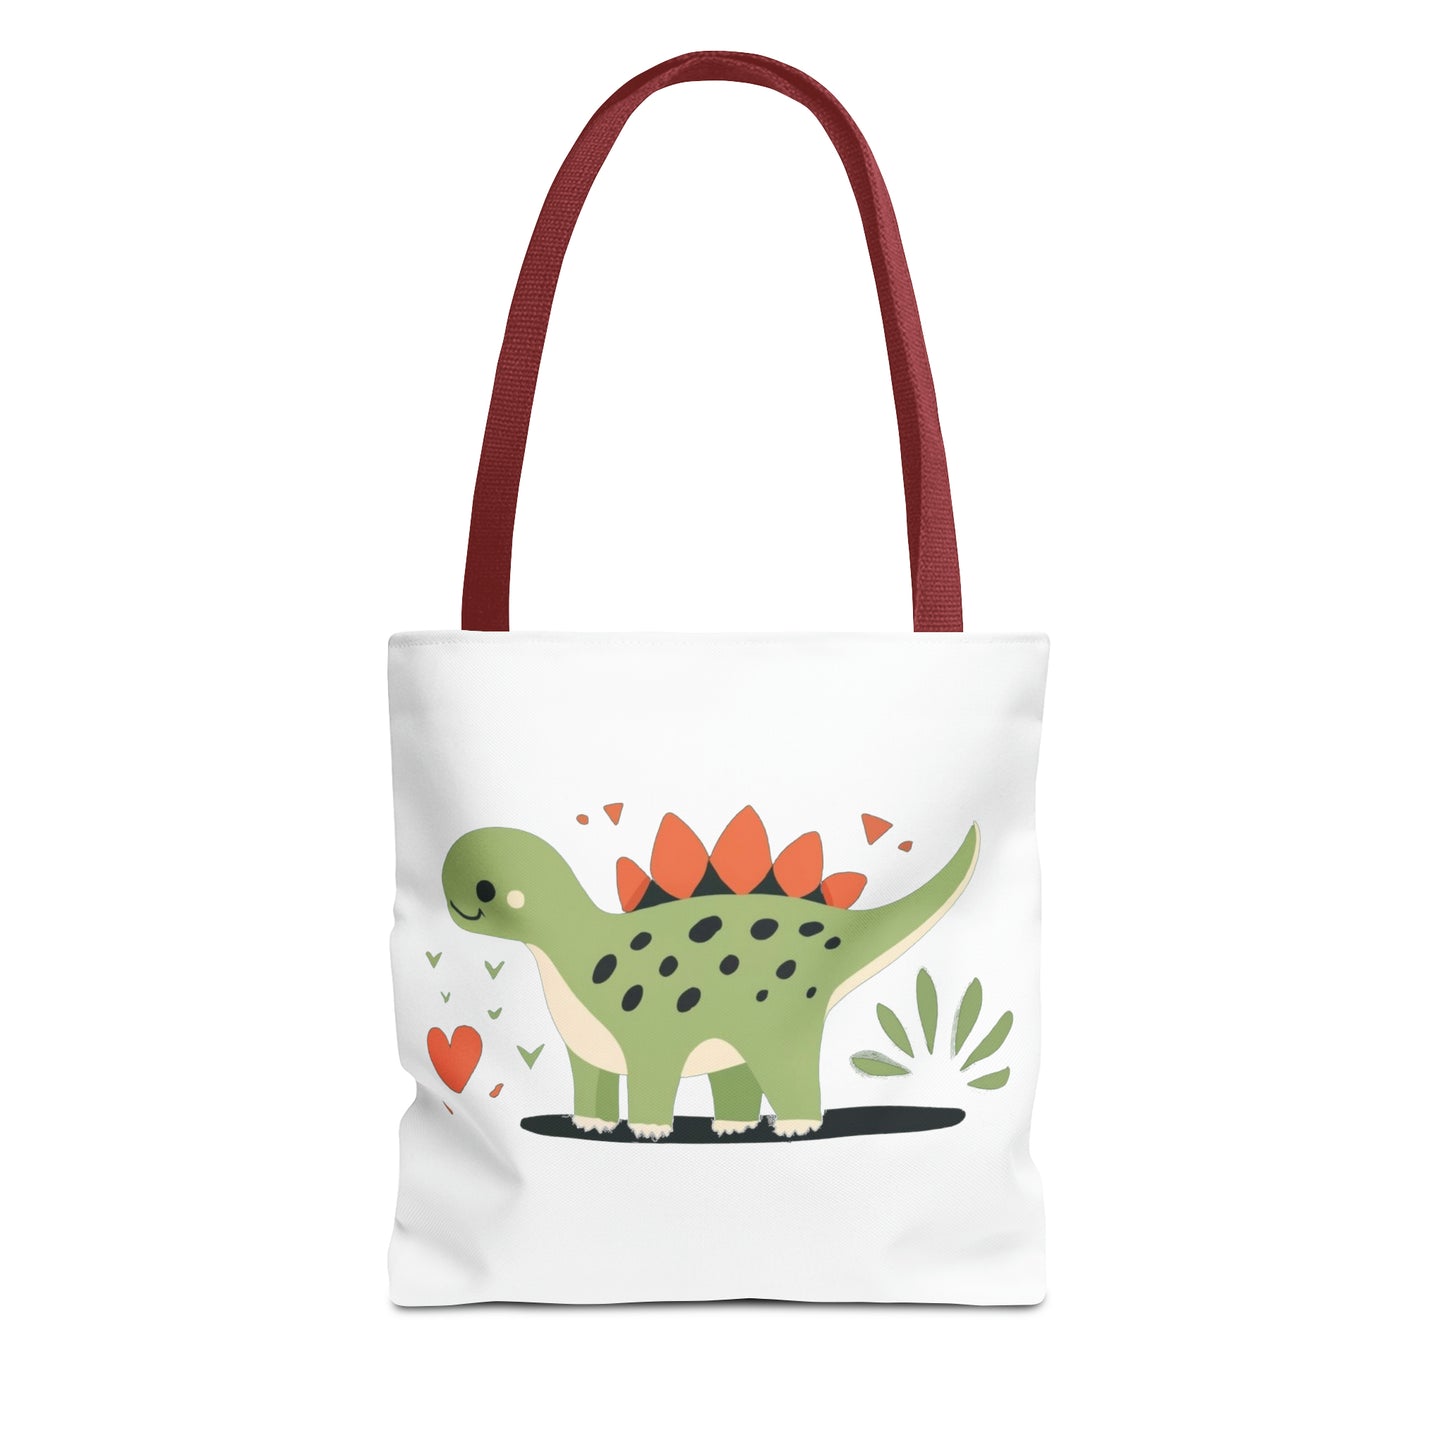 Stegosaurus Hugs: Adorable Tote Bag